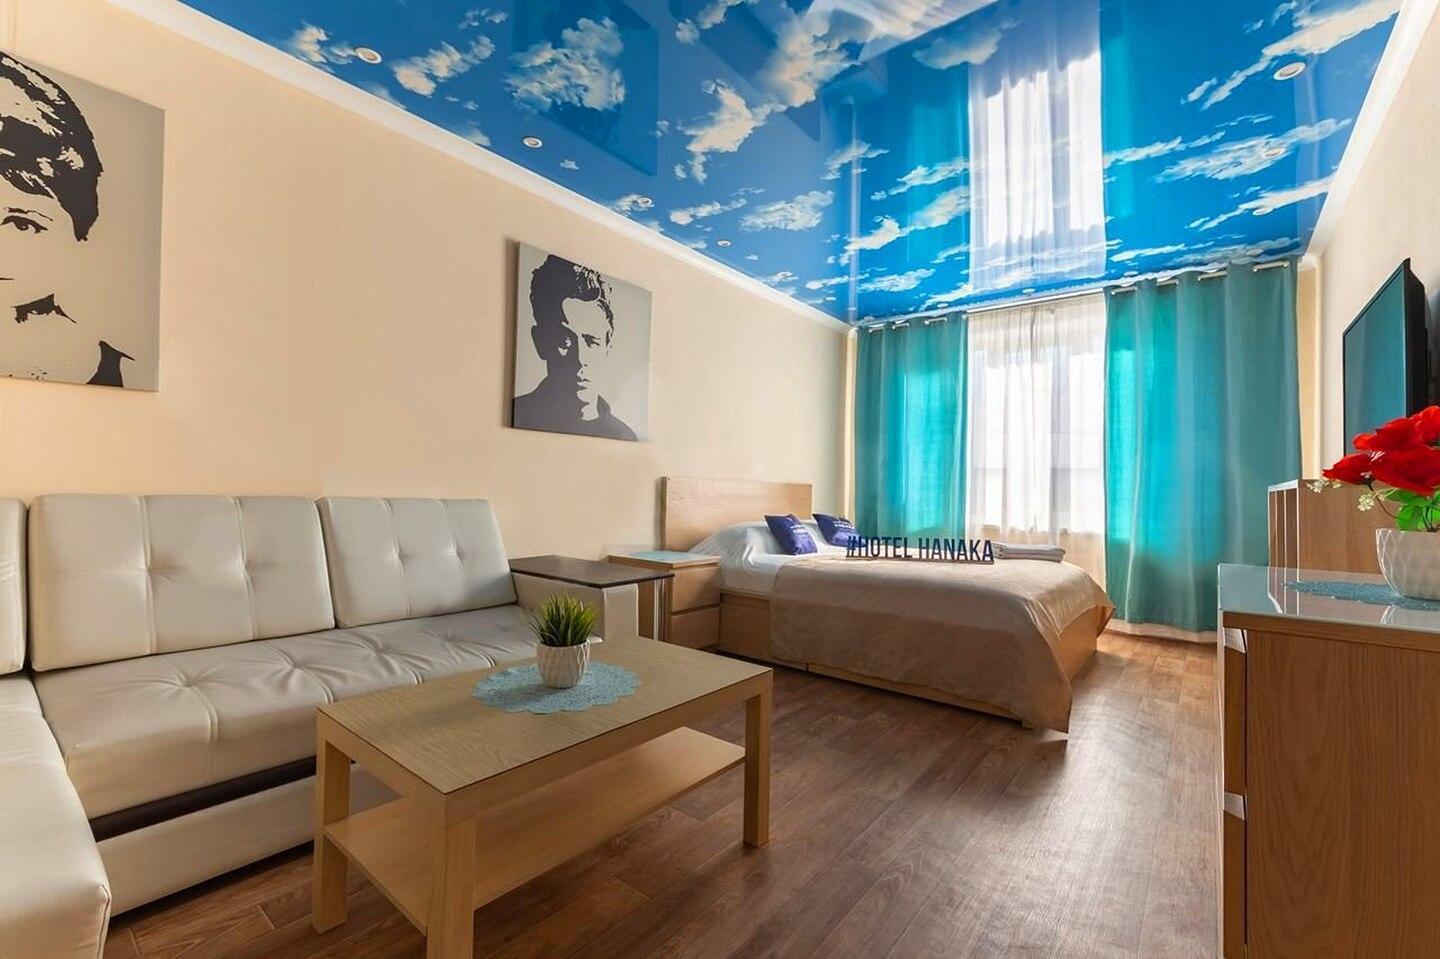 Apartment Hanaka Orekhovy 11 - Moscow